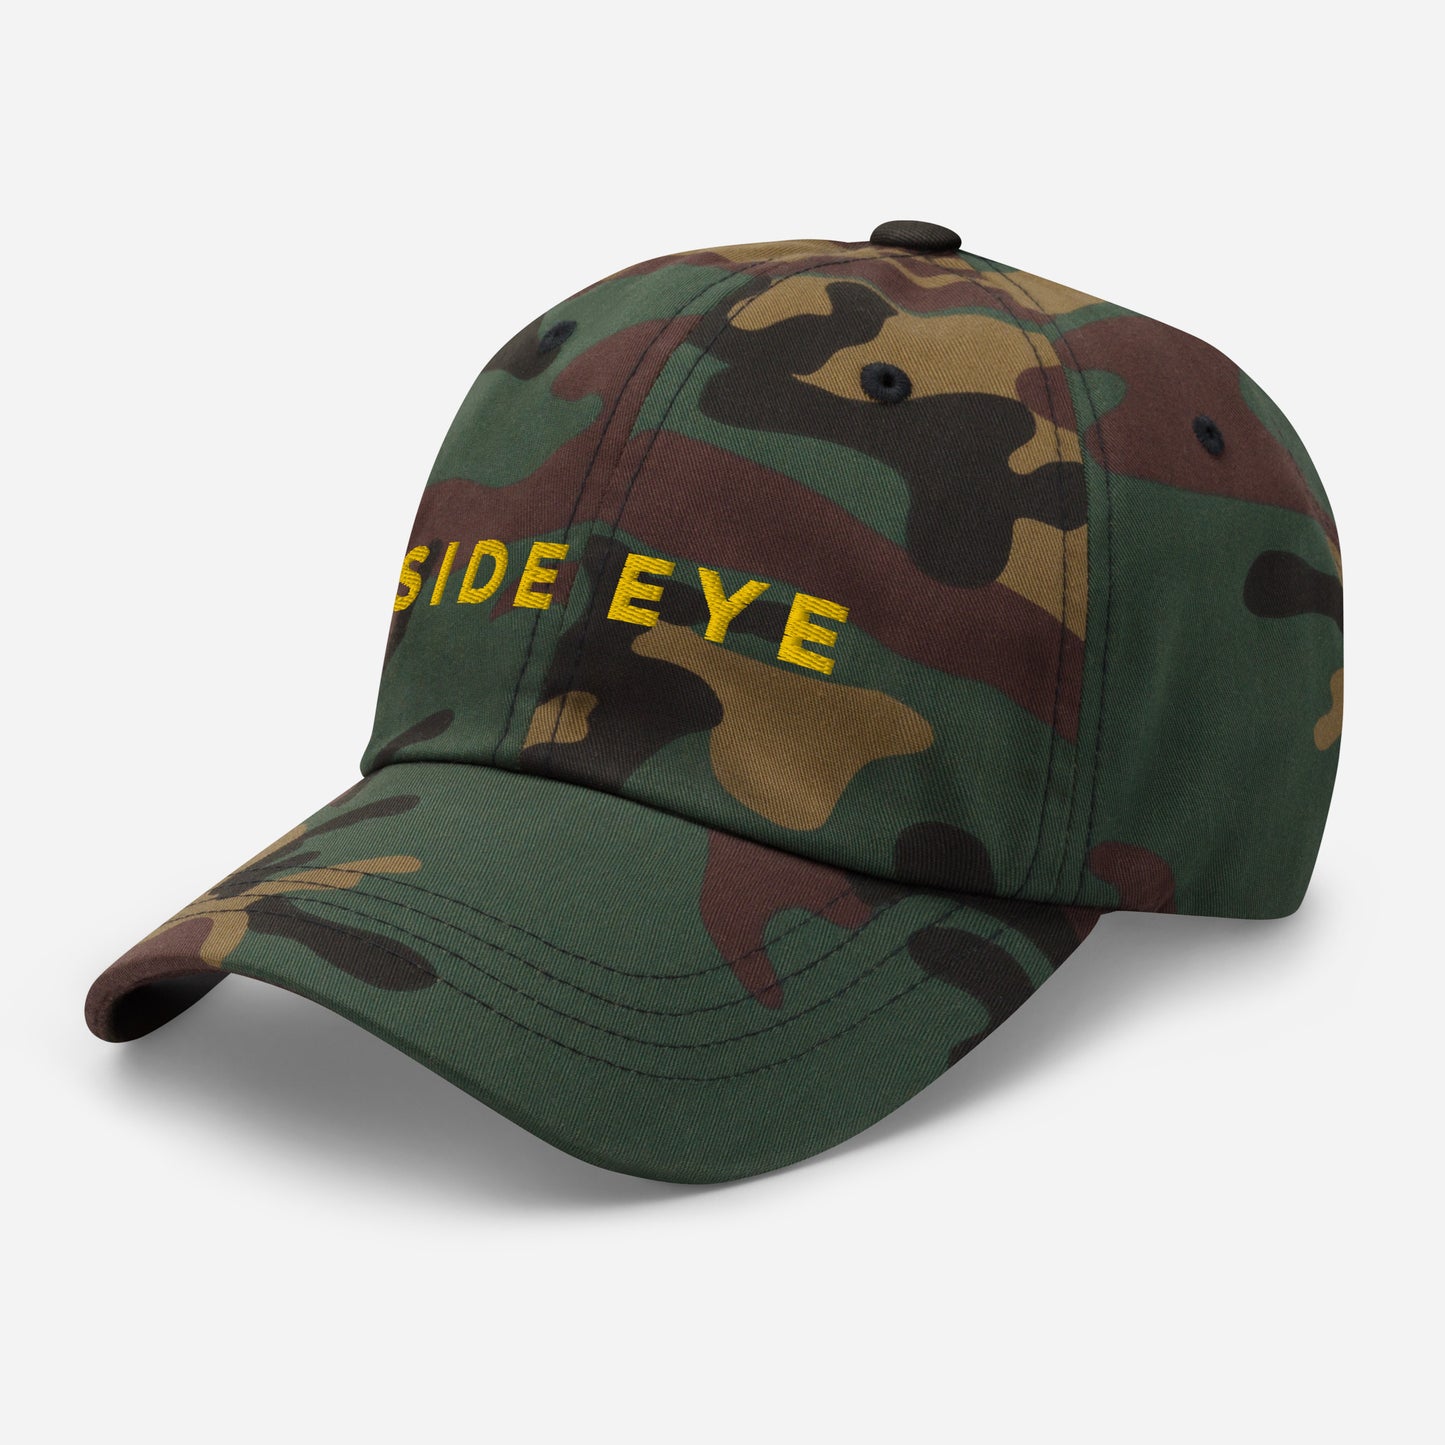 "Side Eye" cap